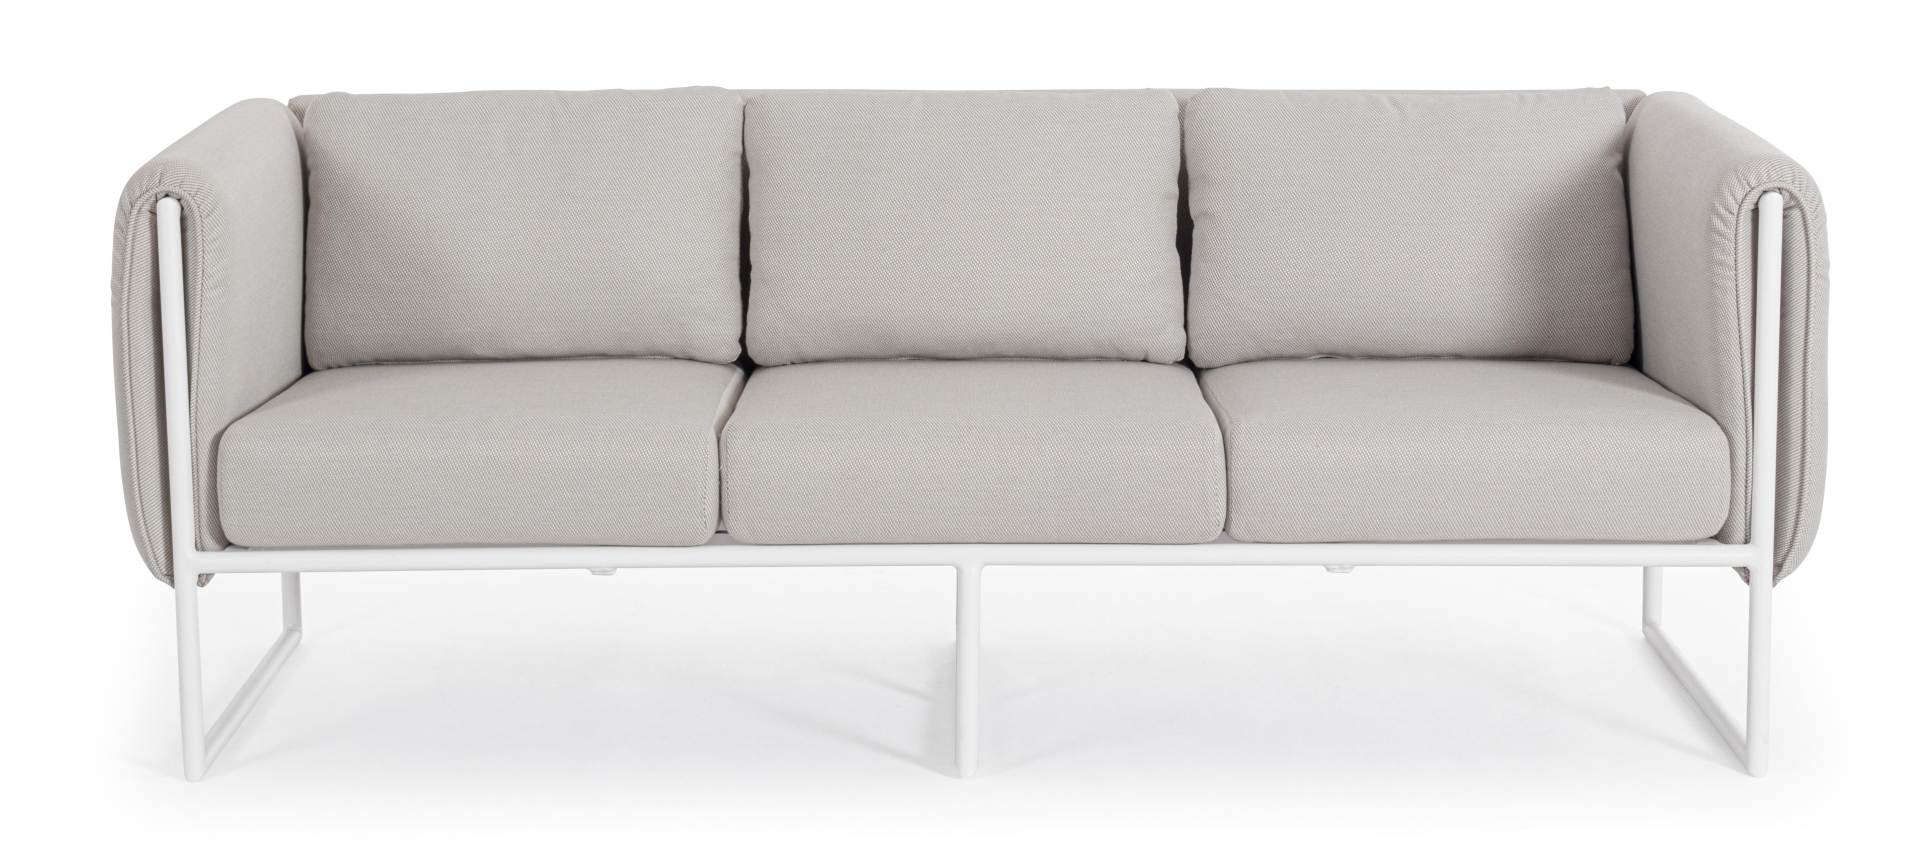 Das Gartensofa Pixel überzeugt mit seinem modernen Design. Gefertigt wurde es aus Olefin-Stoff, welcher einen grauen Farbton besitzt. Das Gestell ist aus Aluminium und hat eine weiße Farbe. Das Sofa verfügt über eine Sitzhöhe von 42 cm und ist für den Out